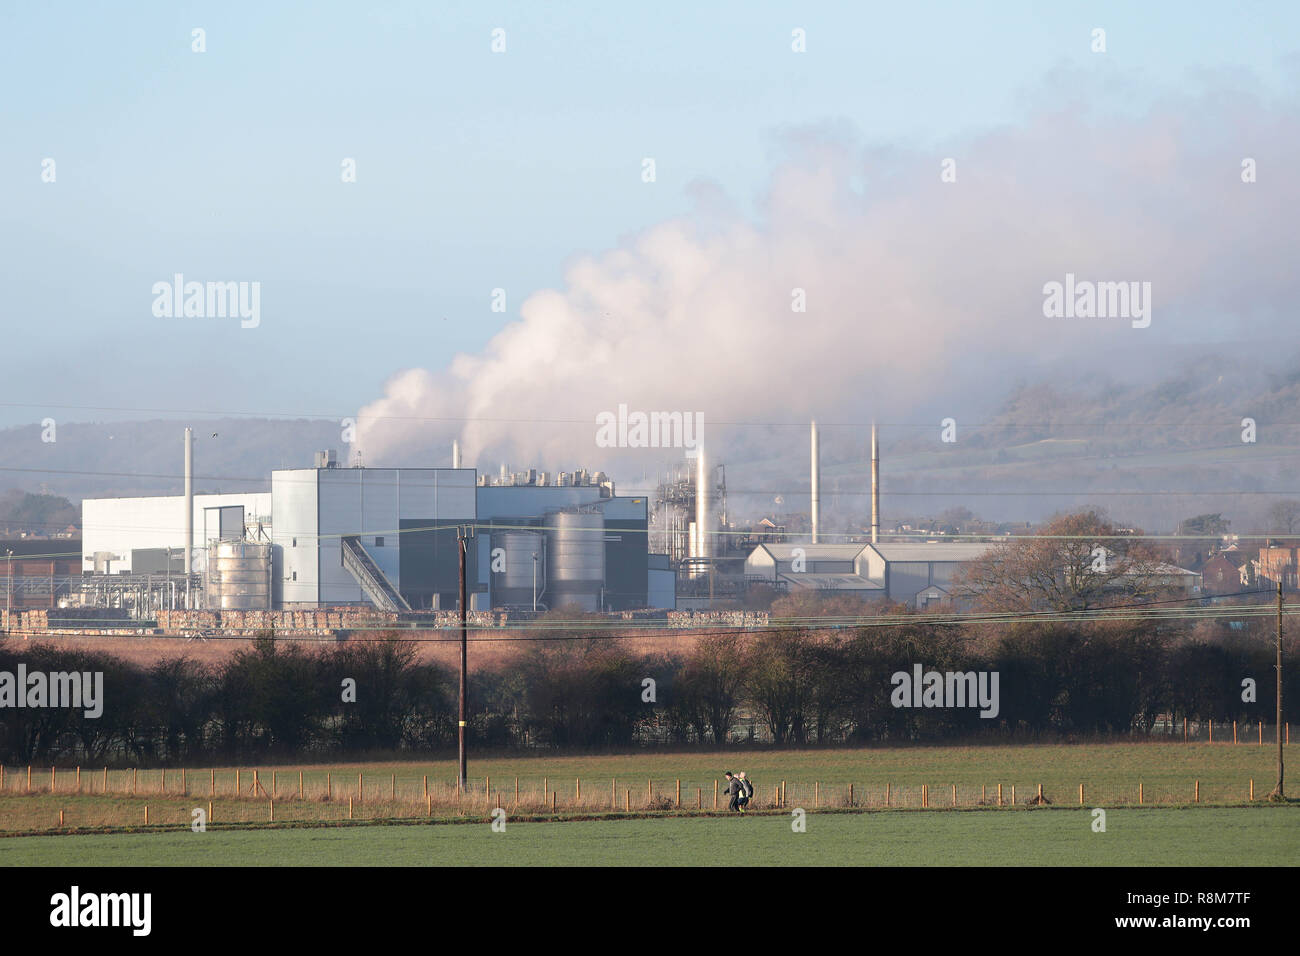 L'usine Smurfit Kappa, sur les bords de la rivière Medway à Aylesford Kent UK. Smurfit Kappa sont l'un des plus plus grands recycleurs de papiers et cartons. Banque D'Images